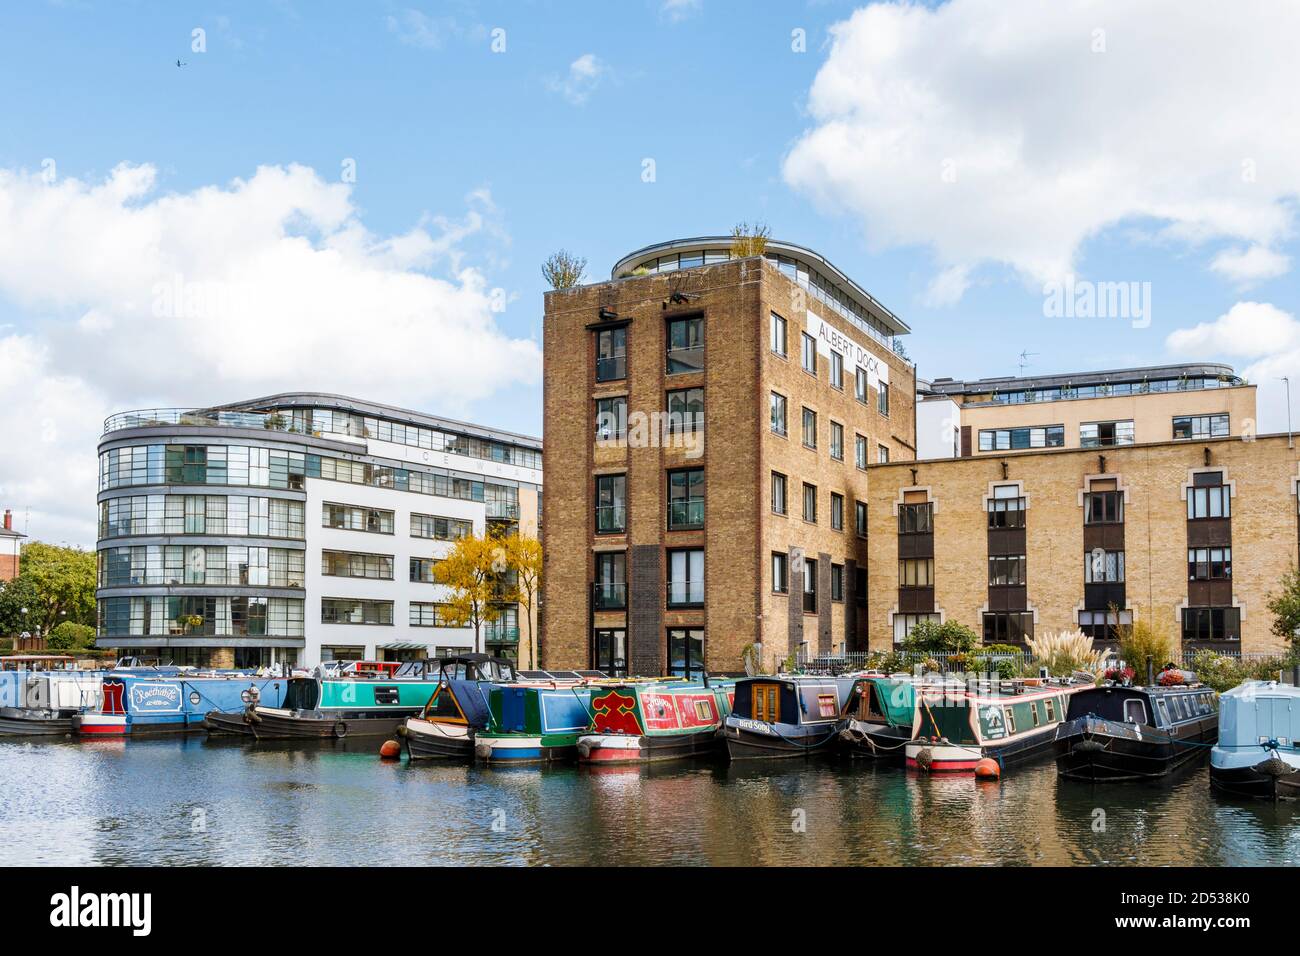 ICE Wharf et Albert Dock dans le bassin de Battlebridge du canal Regent's, King's Cross, Londres, Royaume-Uni Banque D'Images